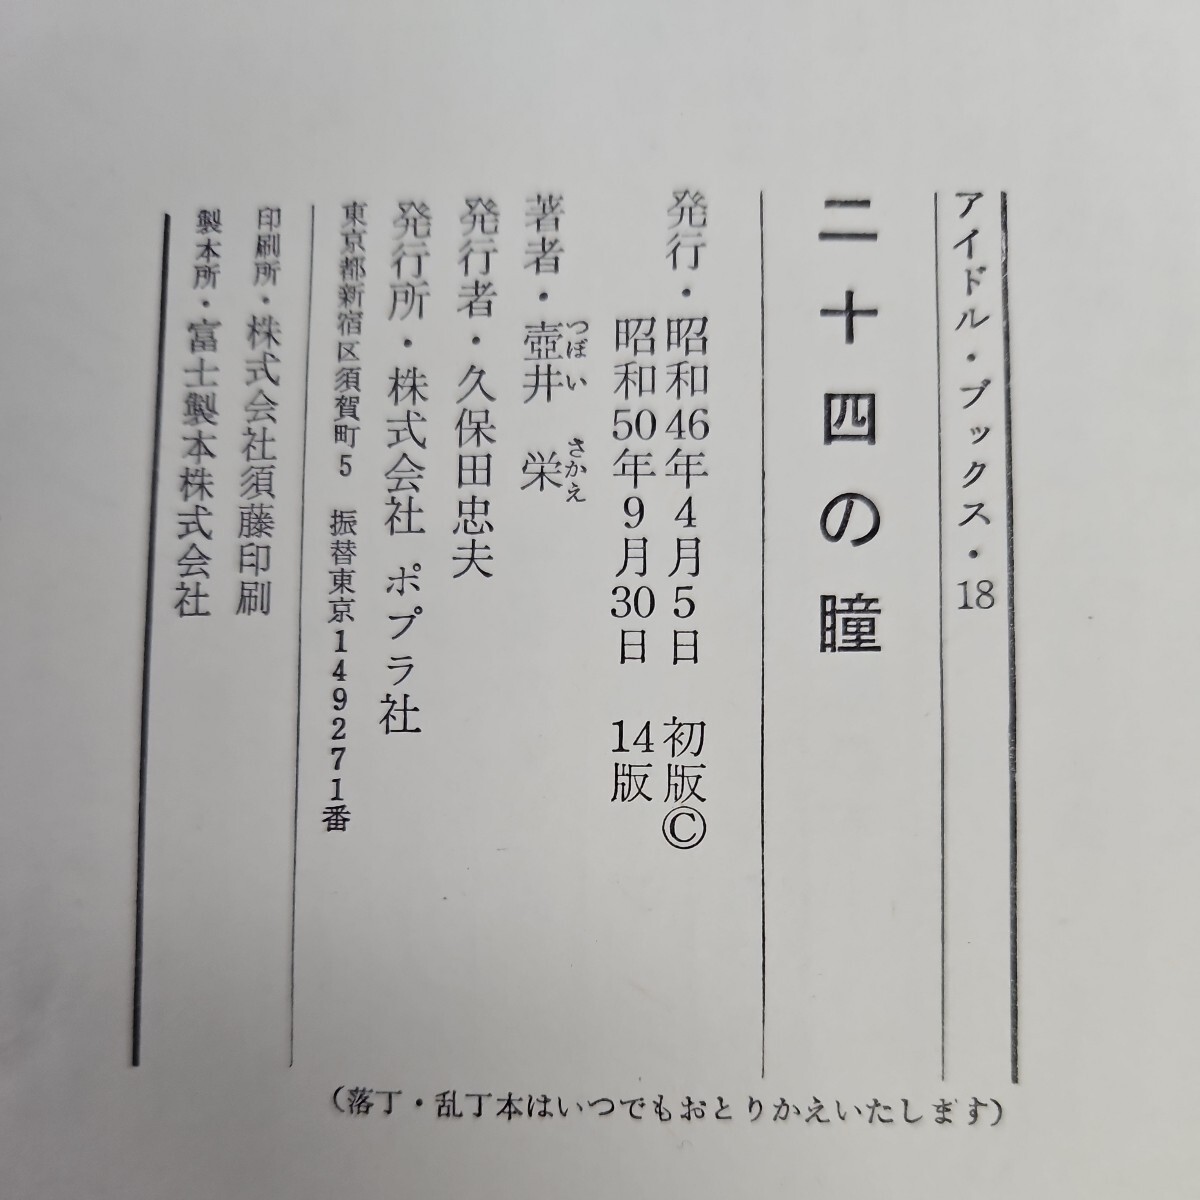 い41-002 二十四の瞳 ジュニア文学名作選 壺井栄_画像3